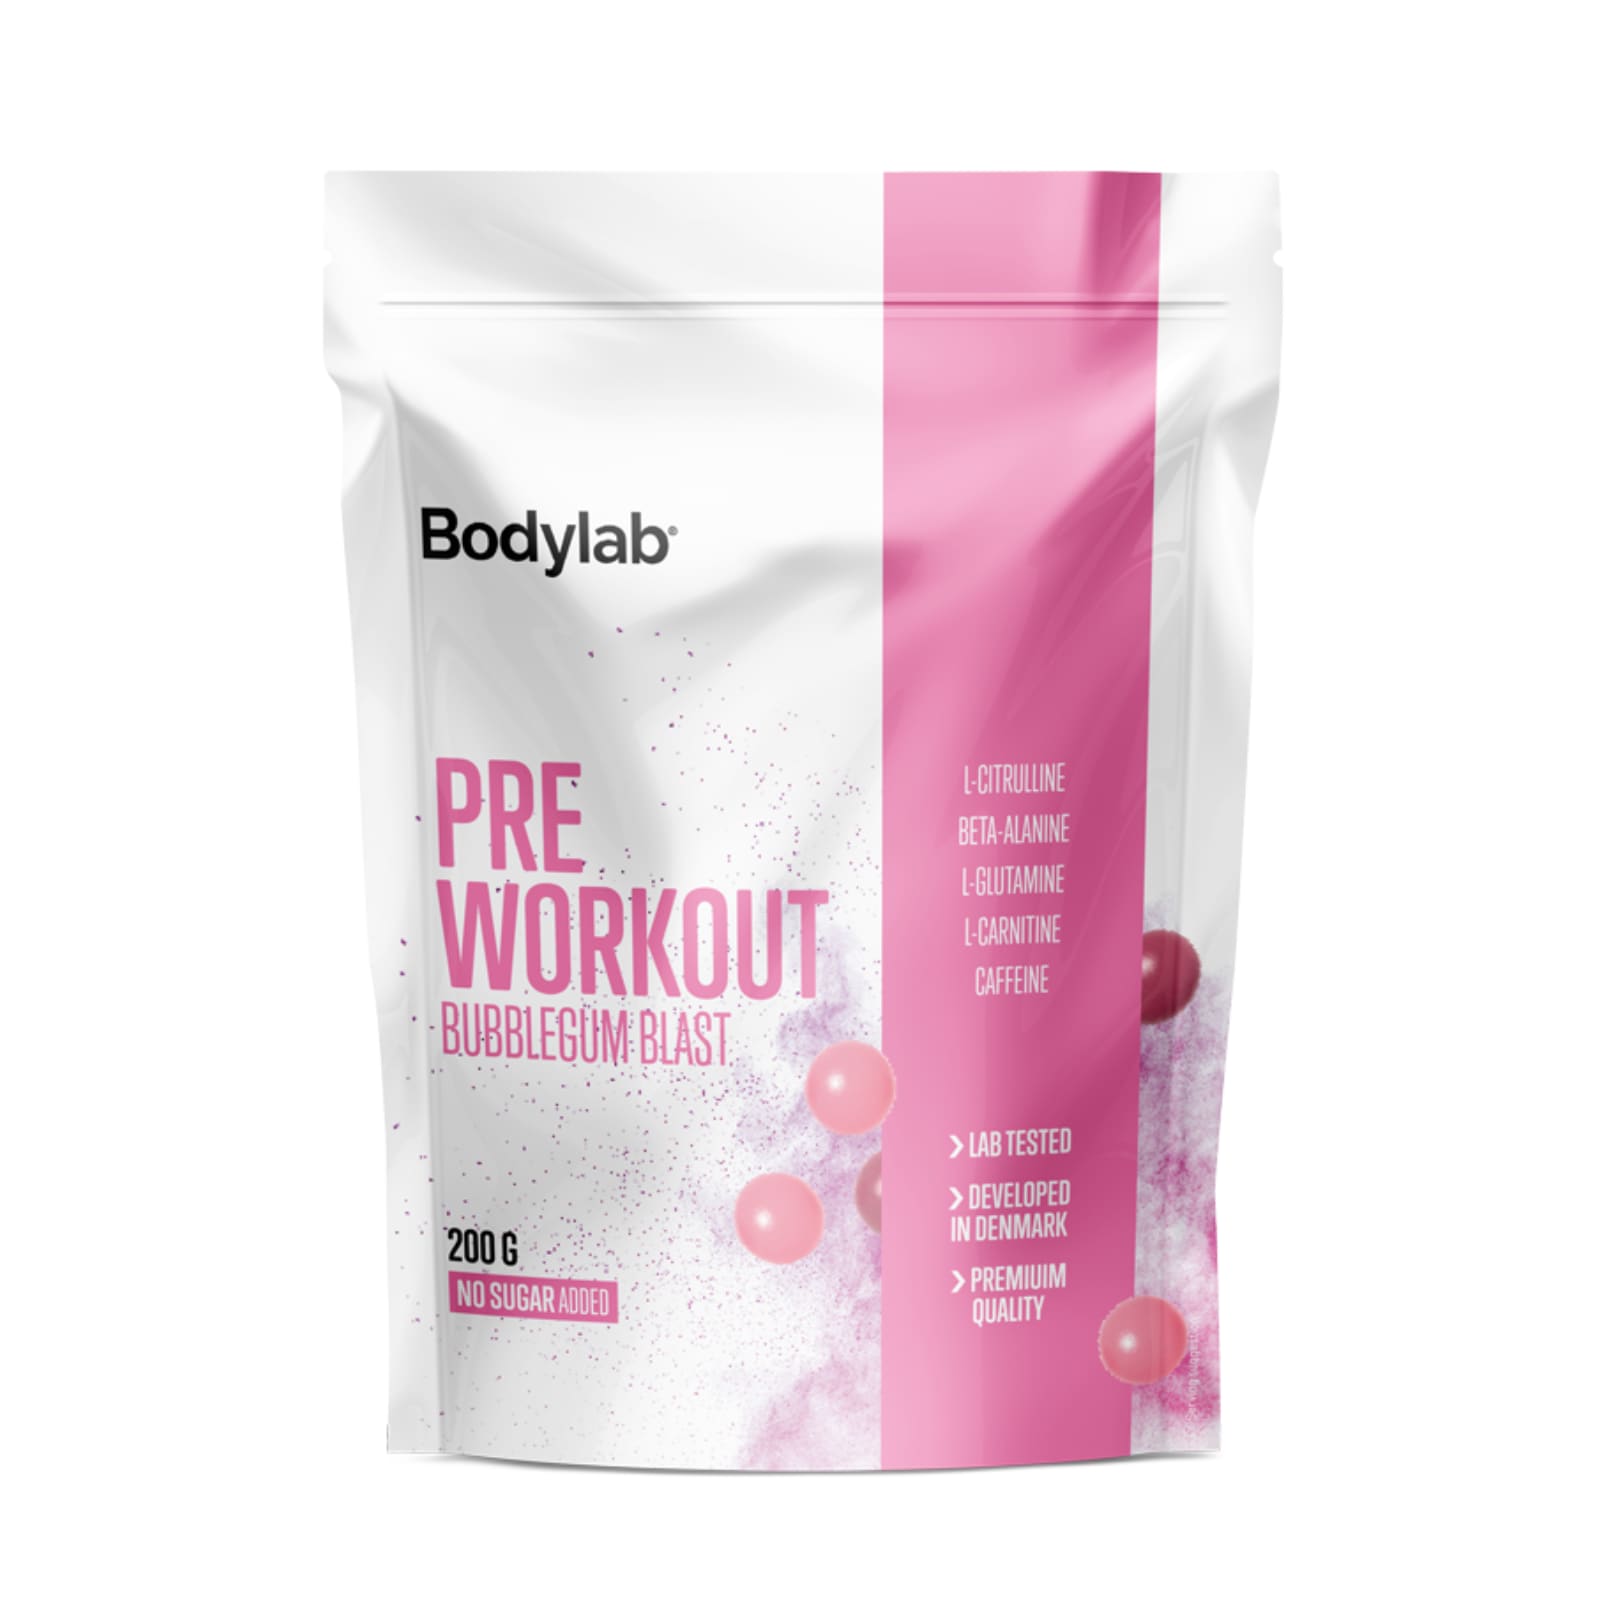 Bodylab Pre Workout Bubblegum Blast